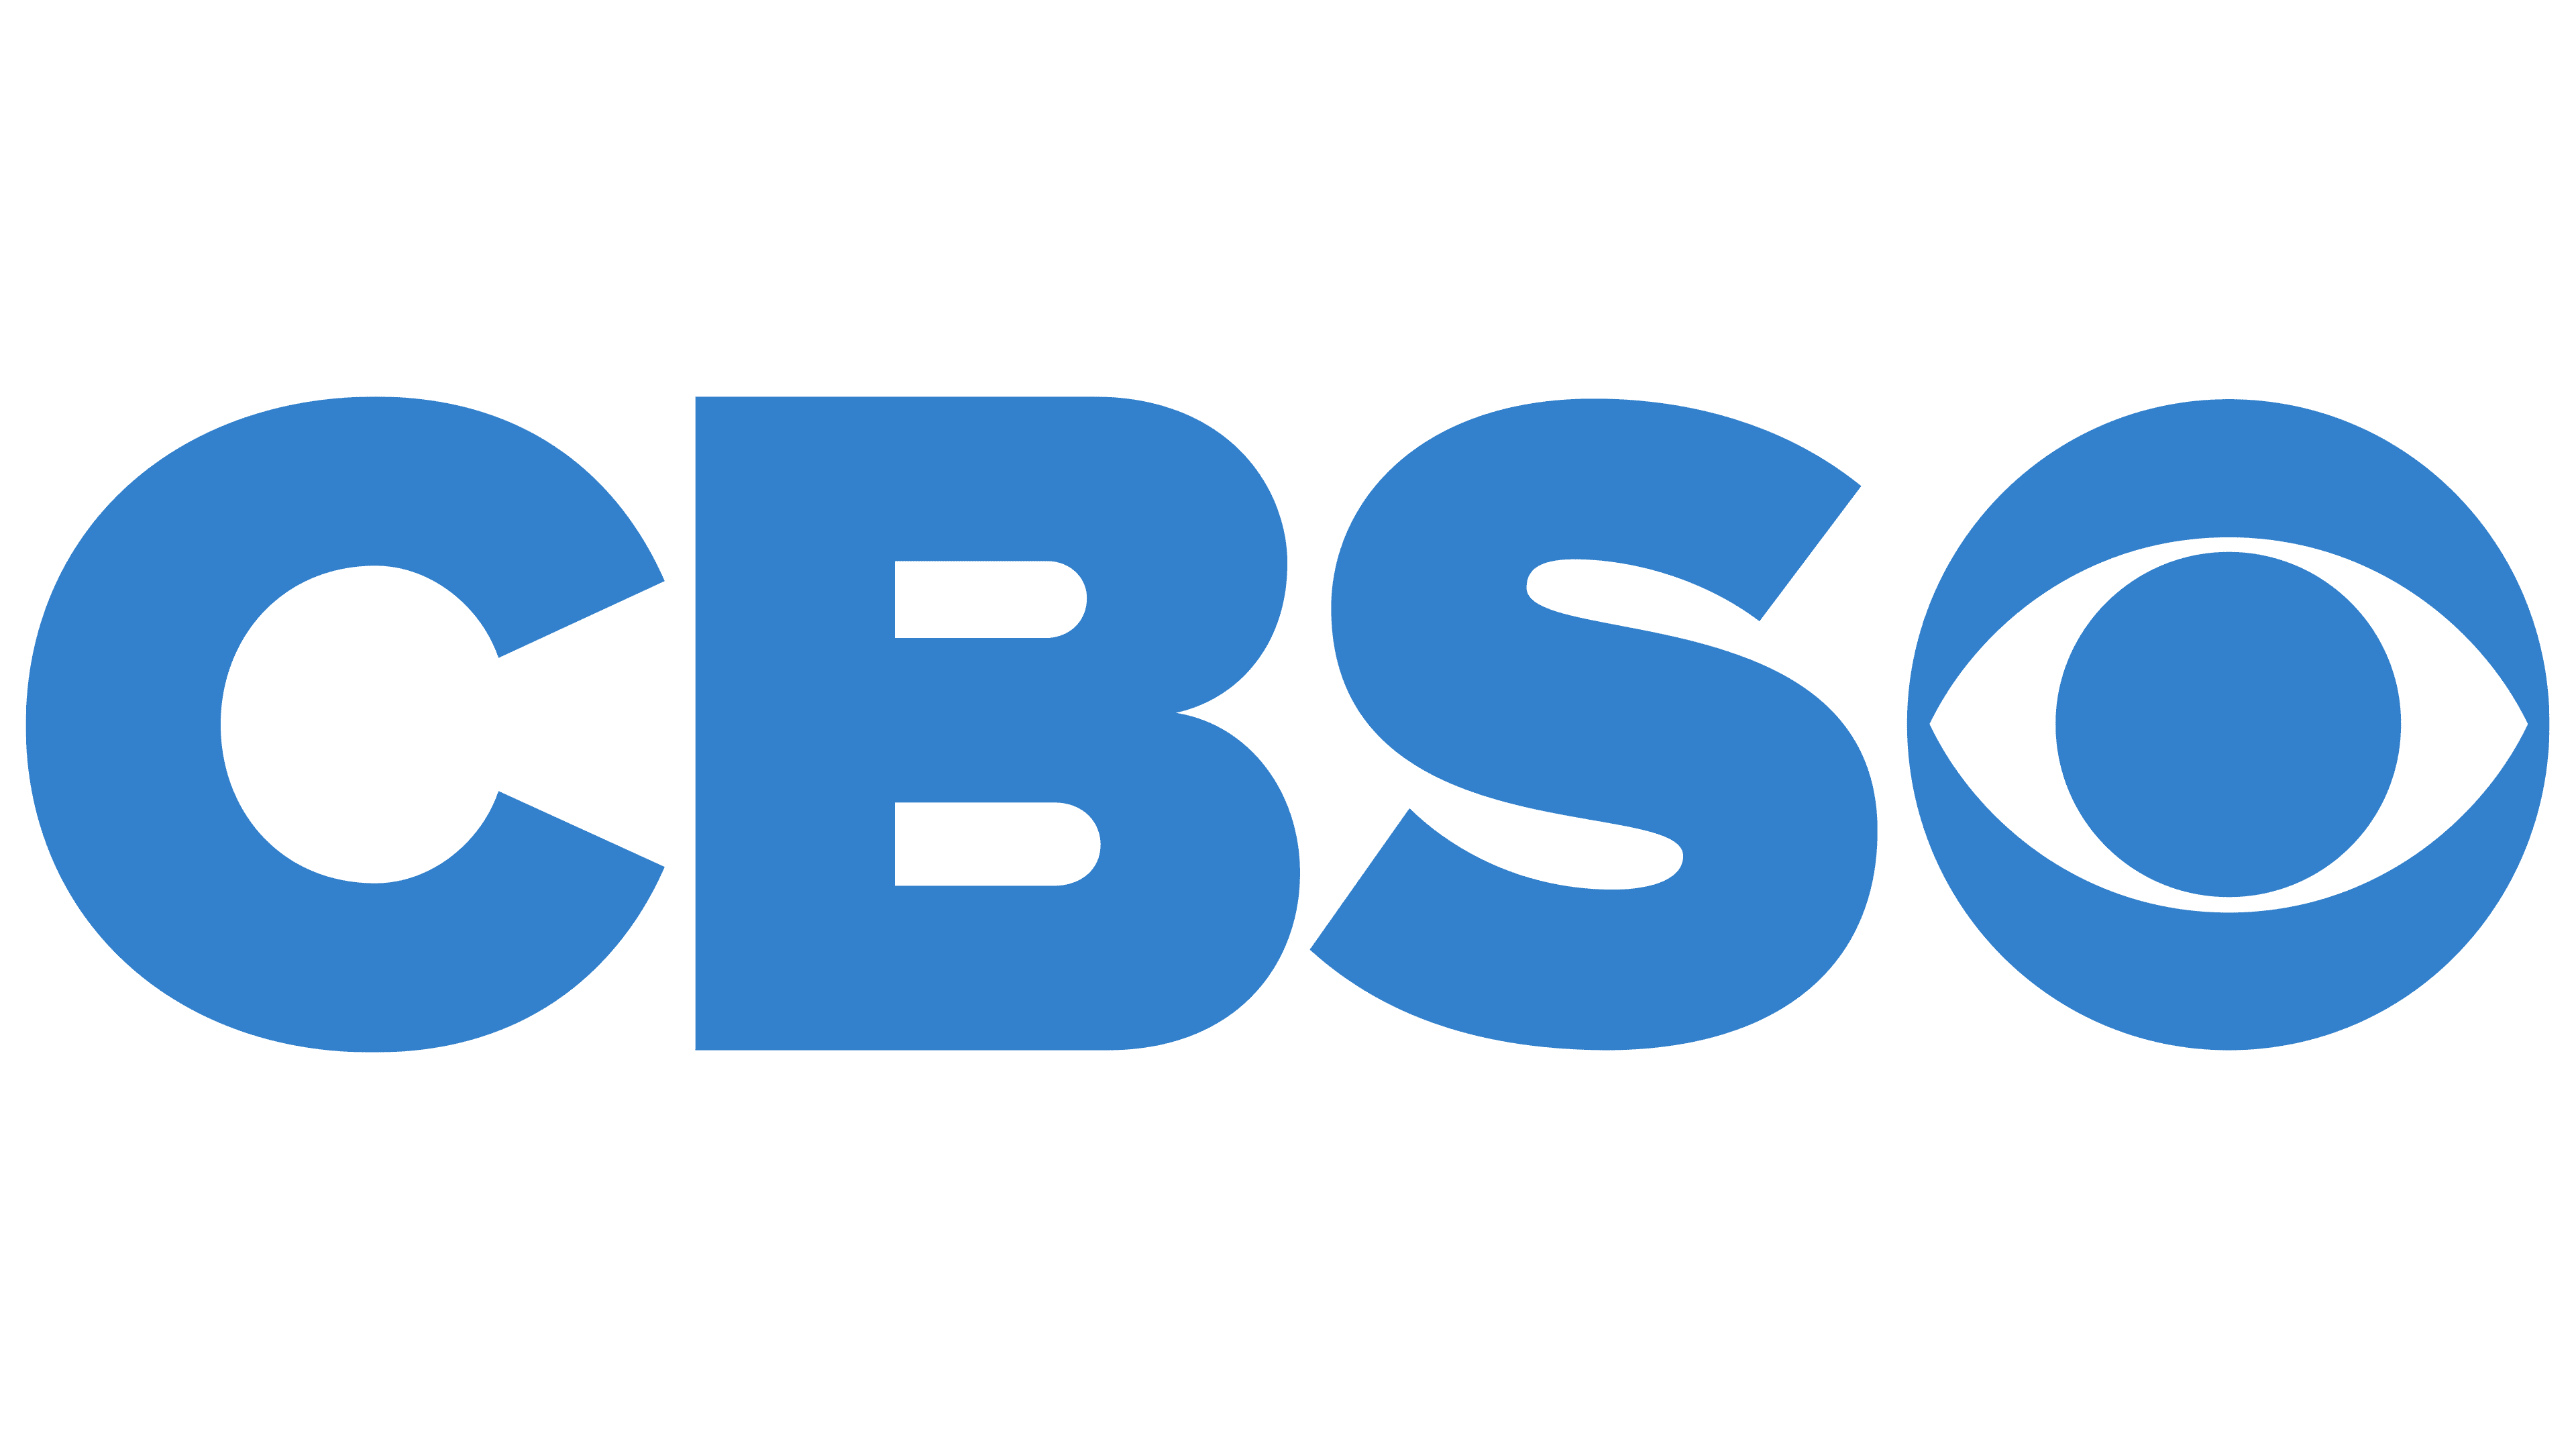 Cbs Channel Logo